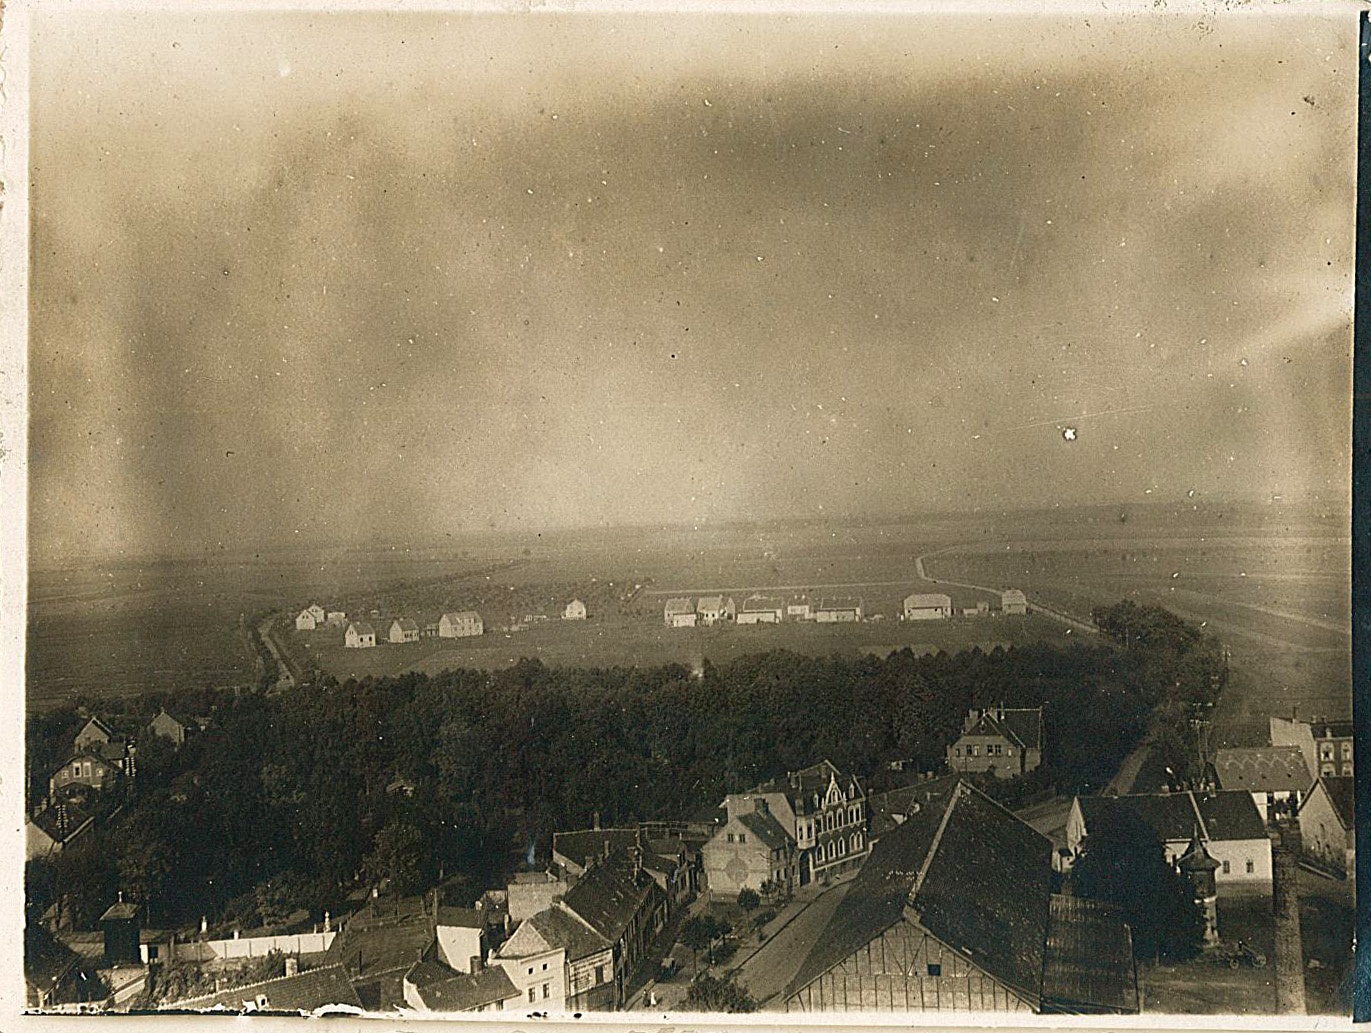 Ansichtskarte mit Luftbild von Wolmirstedt, 1927 (Museum Wolmirstedt RR-F)